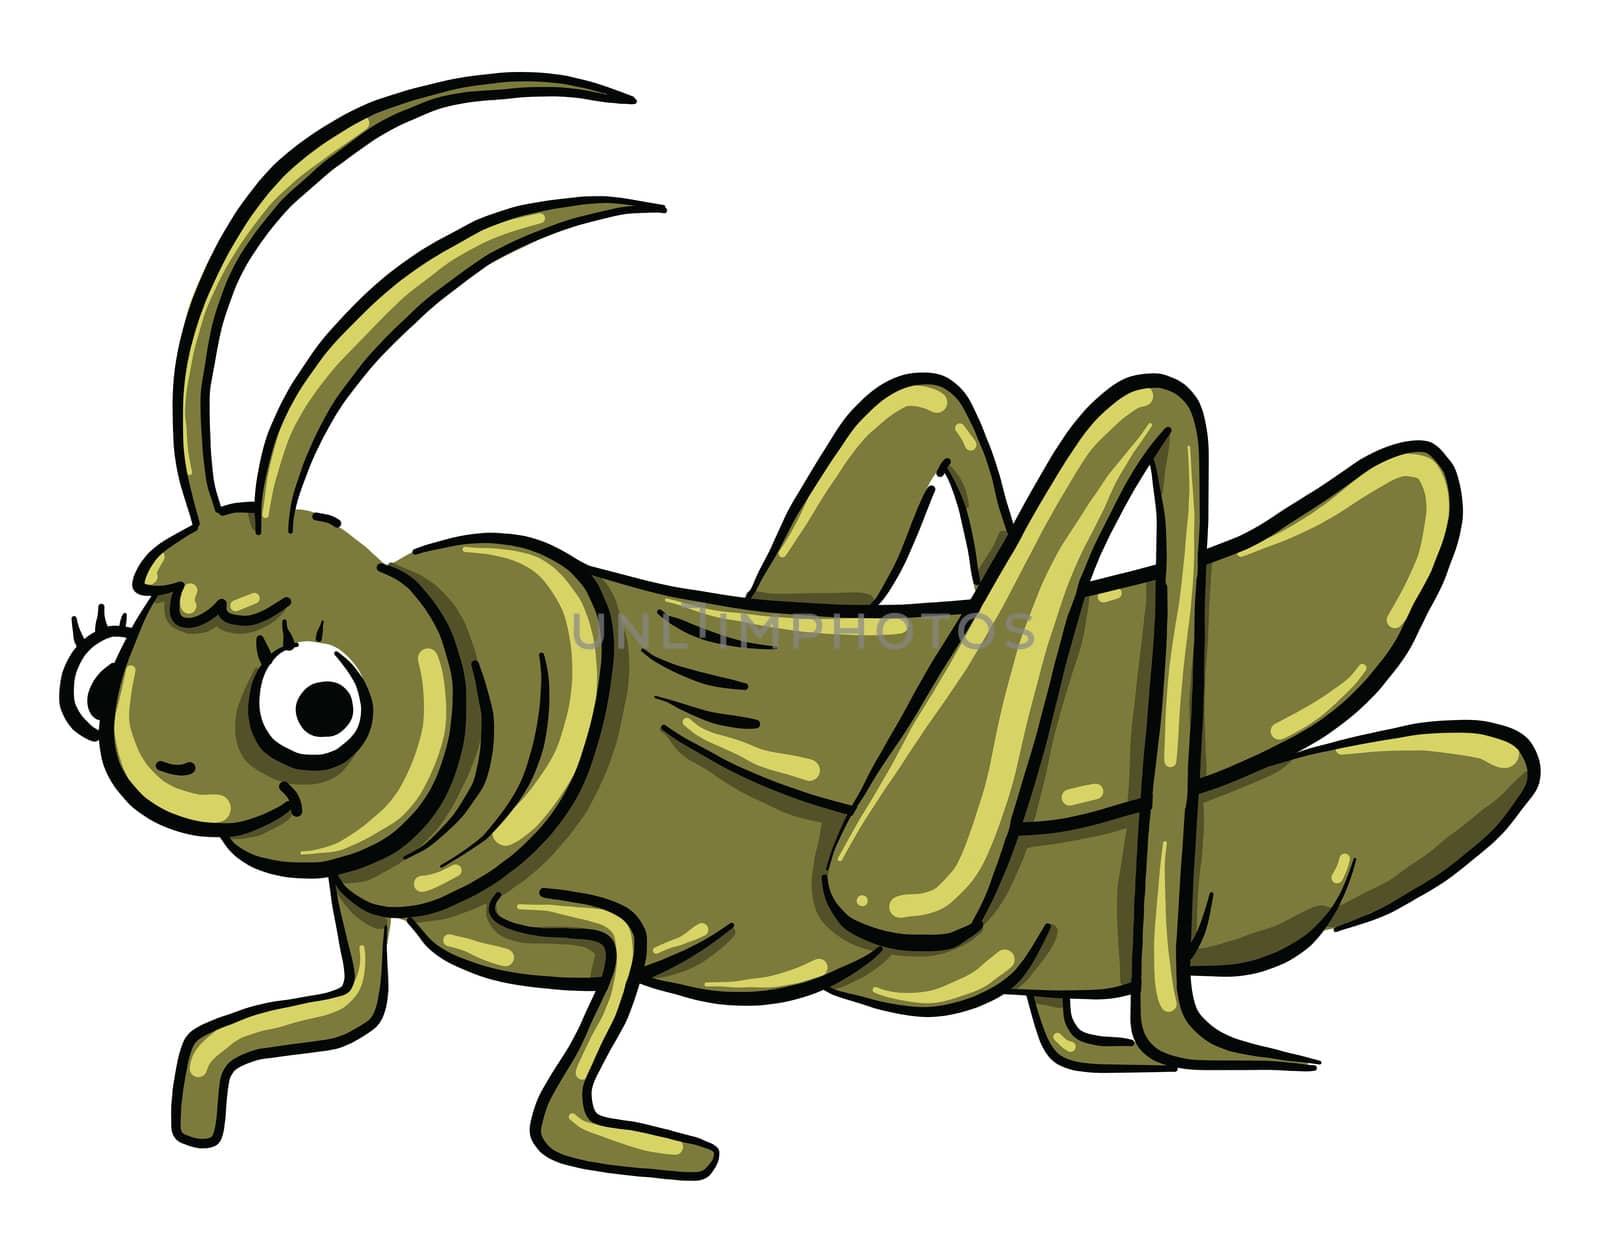 Green grasshopper , illustration, vector on white background